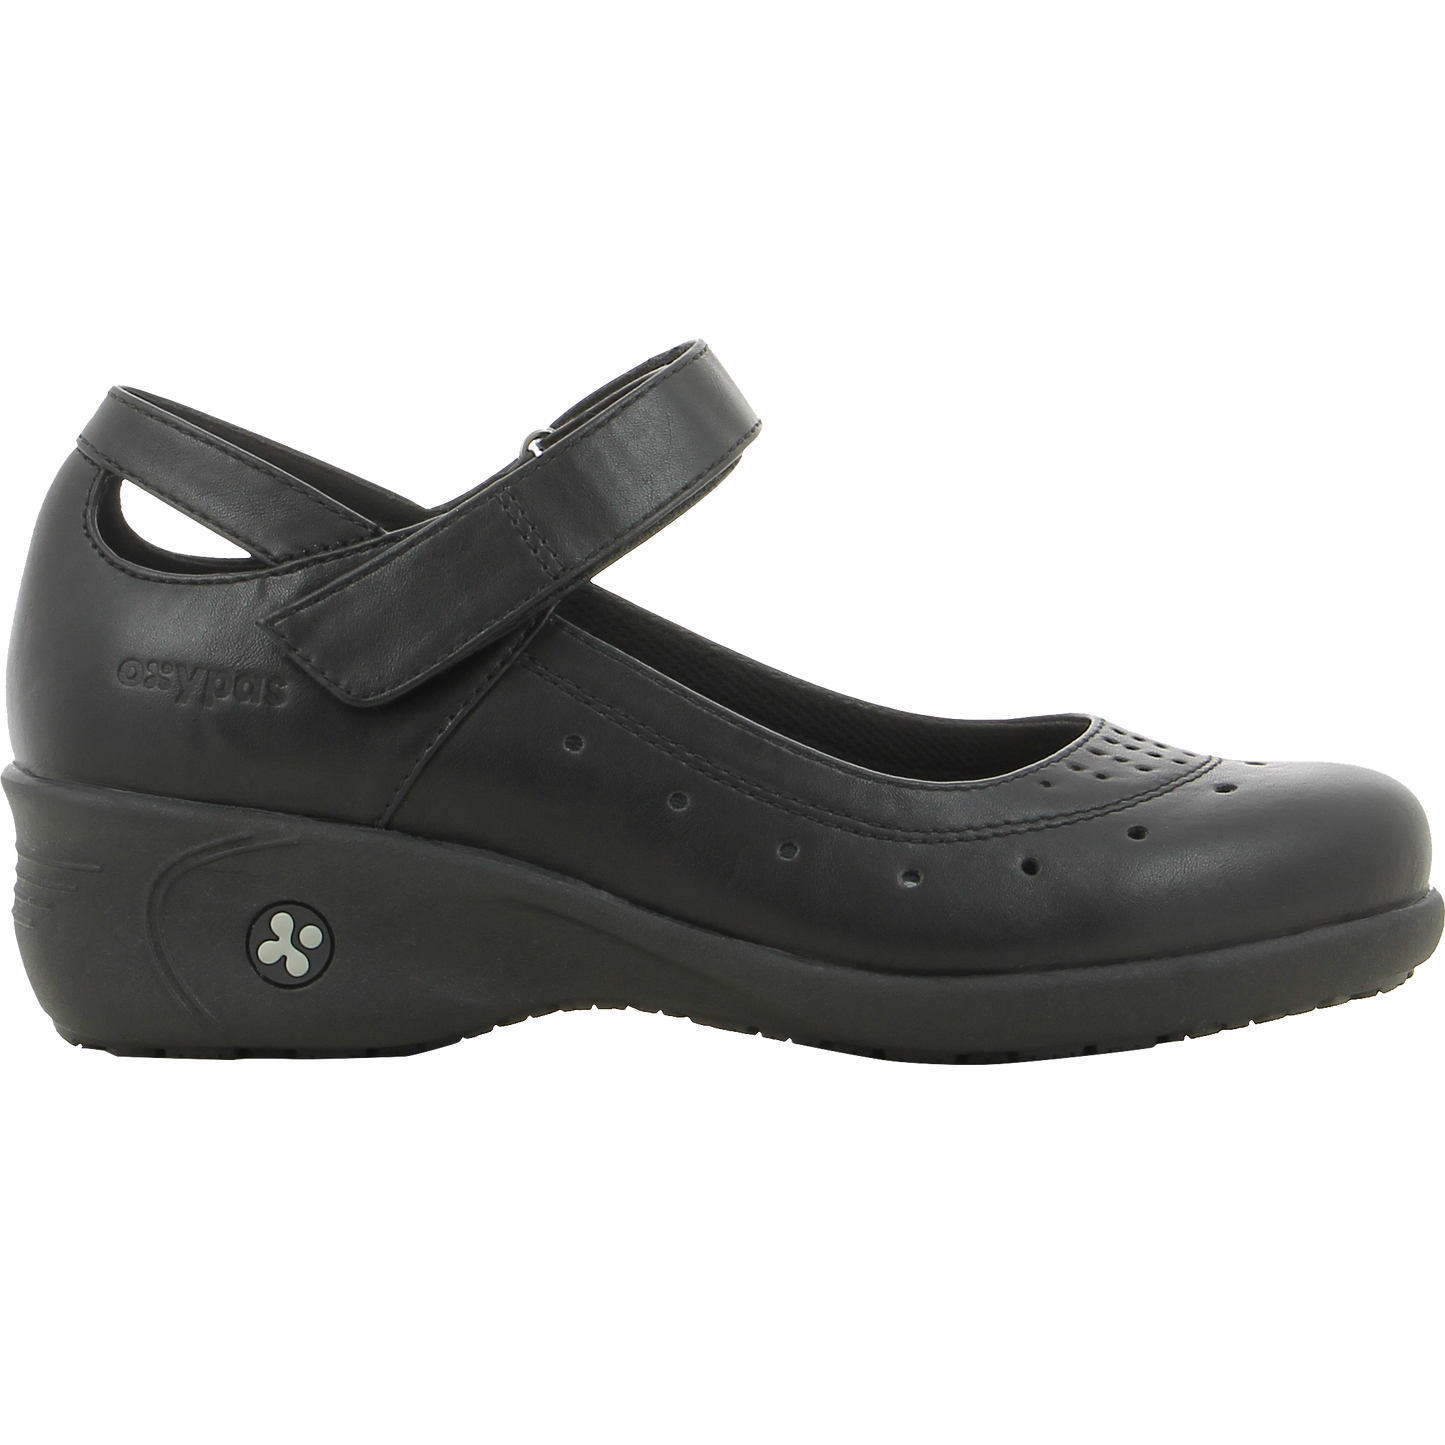 OLIVE saugos batai su Coolmax® drėgmę valdančiu pamušalu ir ESD saugumo funkcijomis, idealūs medicinos ir maitinimo sektoriams